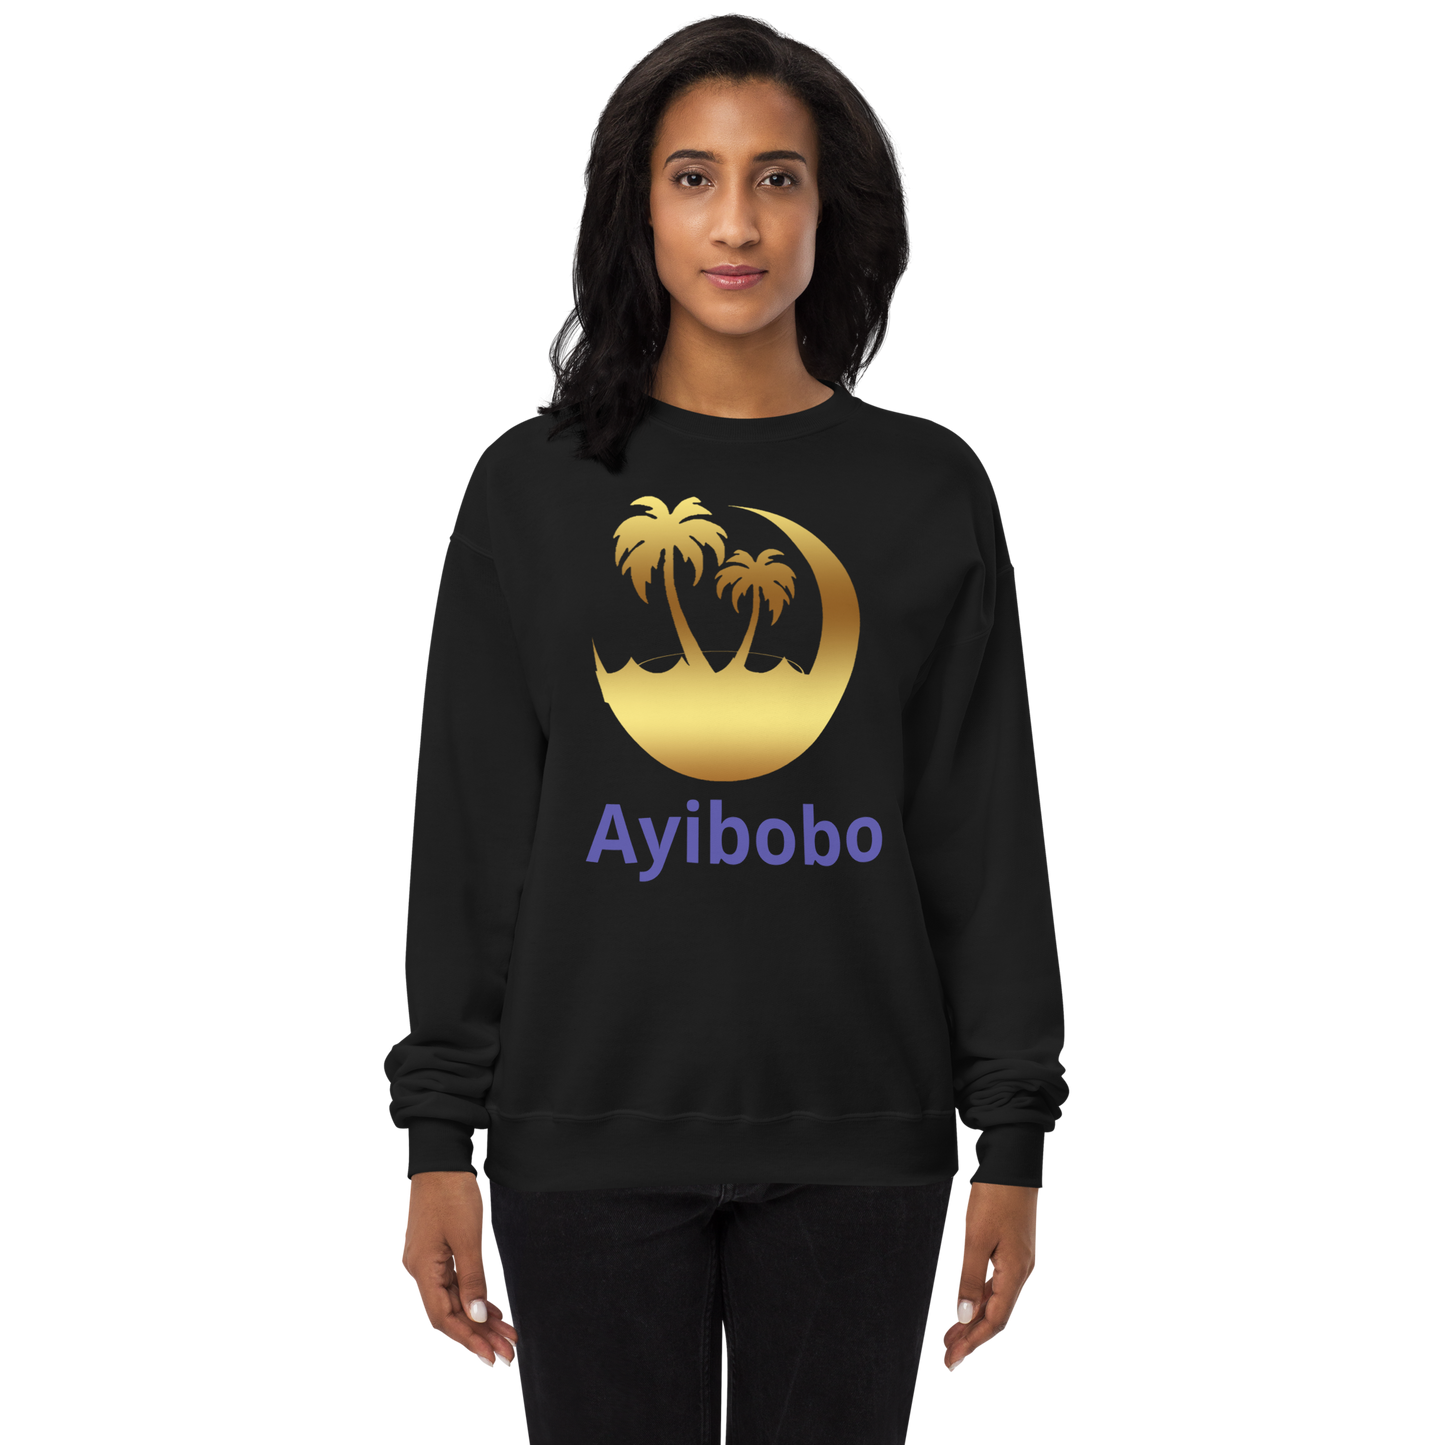 Ayibobo Unisex fleece sweatshirt